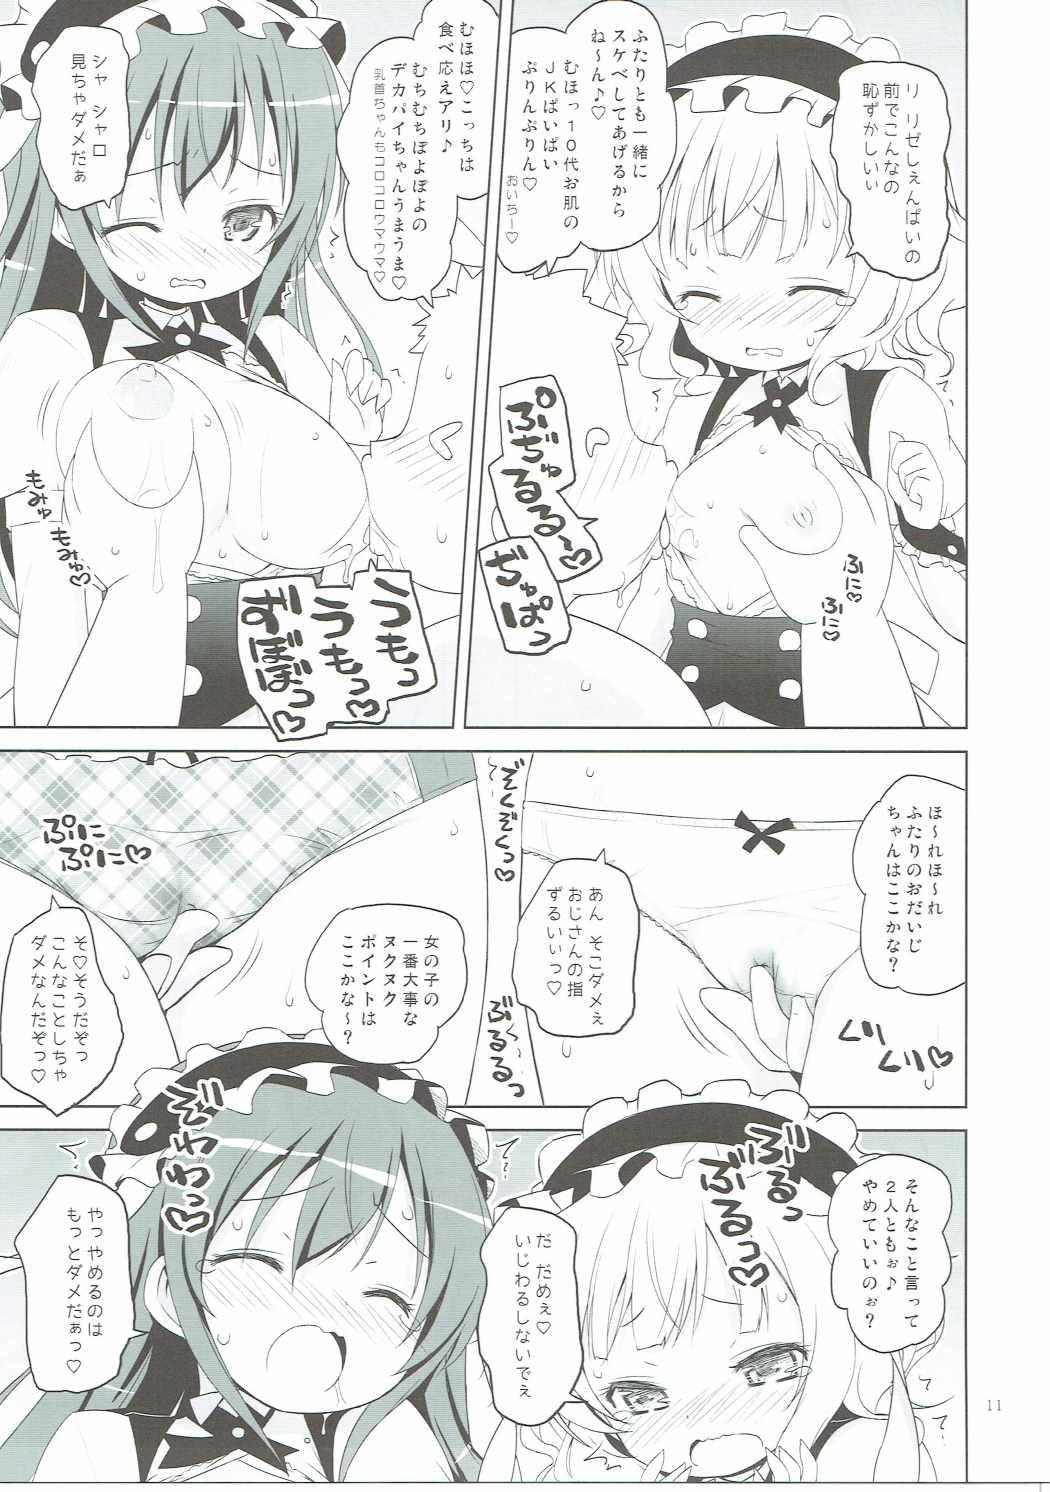 Tites Sharo-chan VS Caffeine Otoko - Gochuumon wa usagi desu ka Licking - Page 10